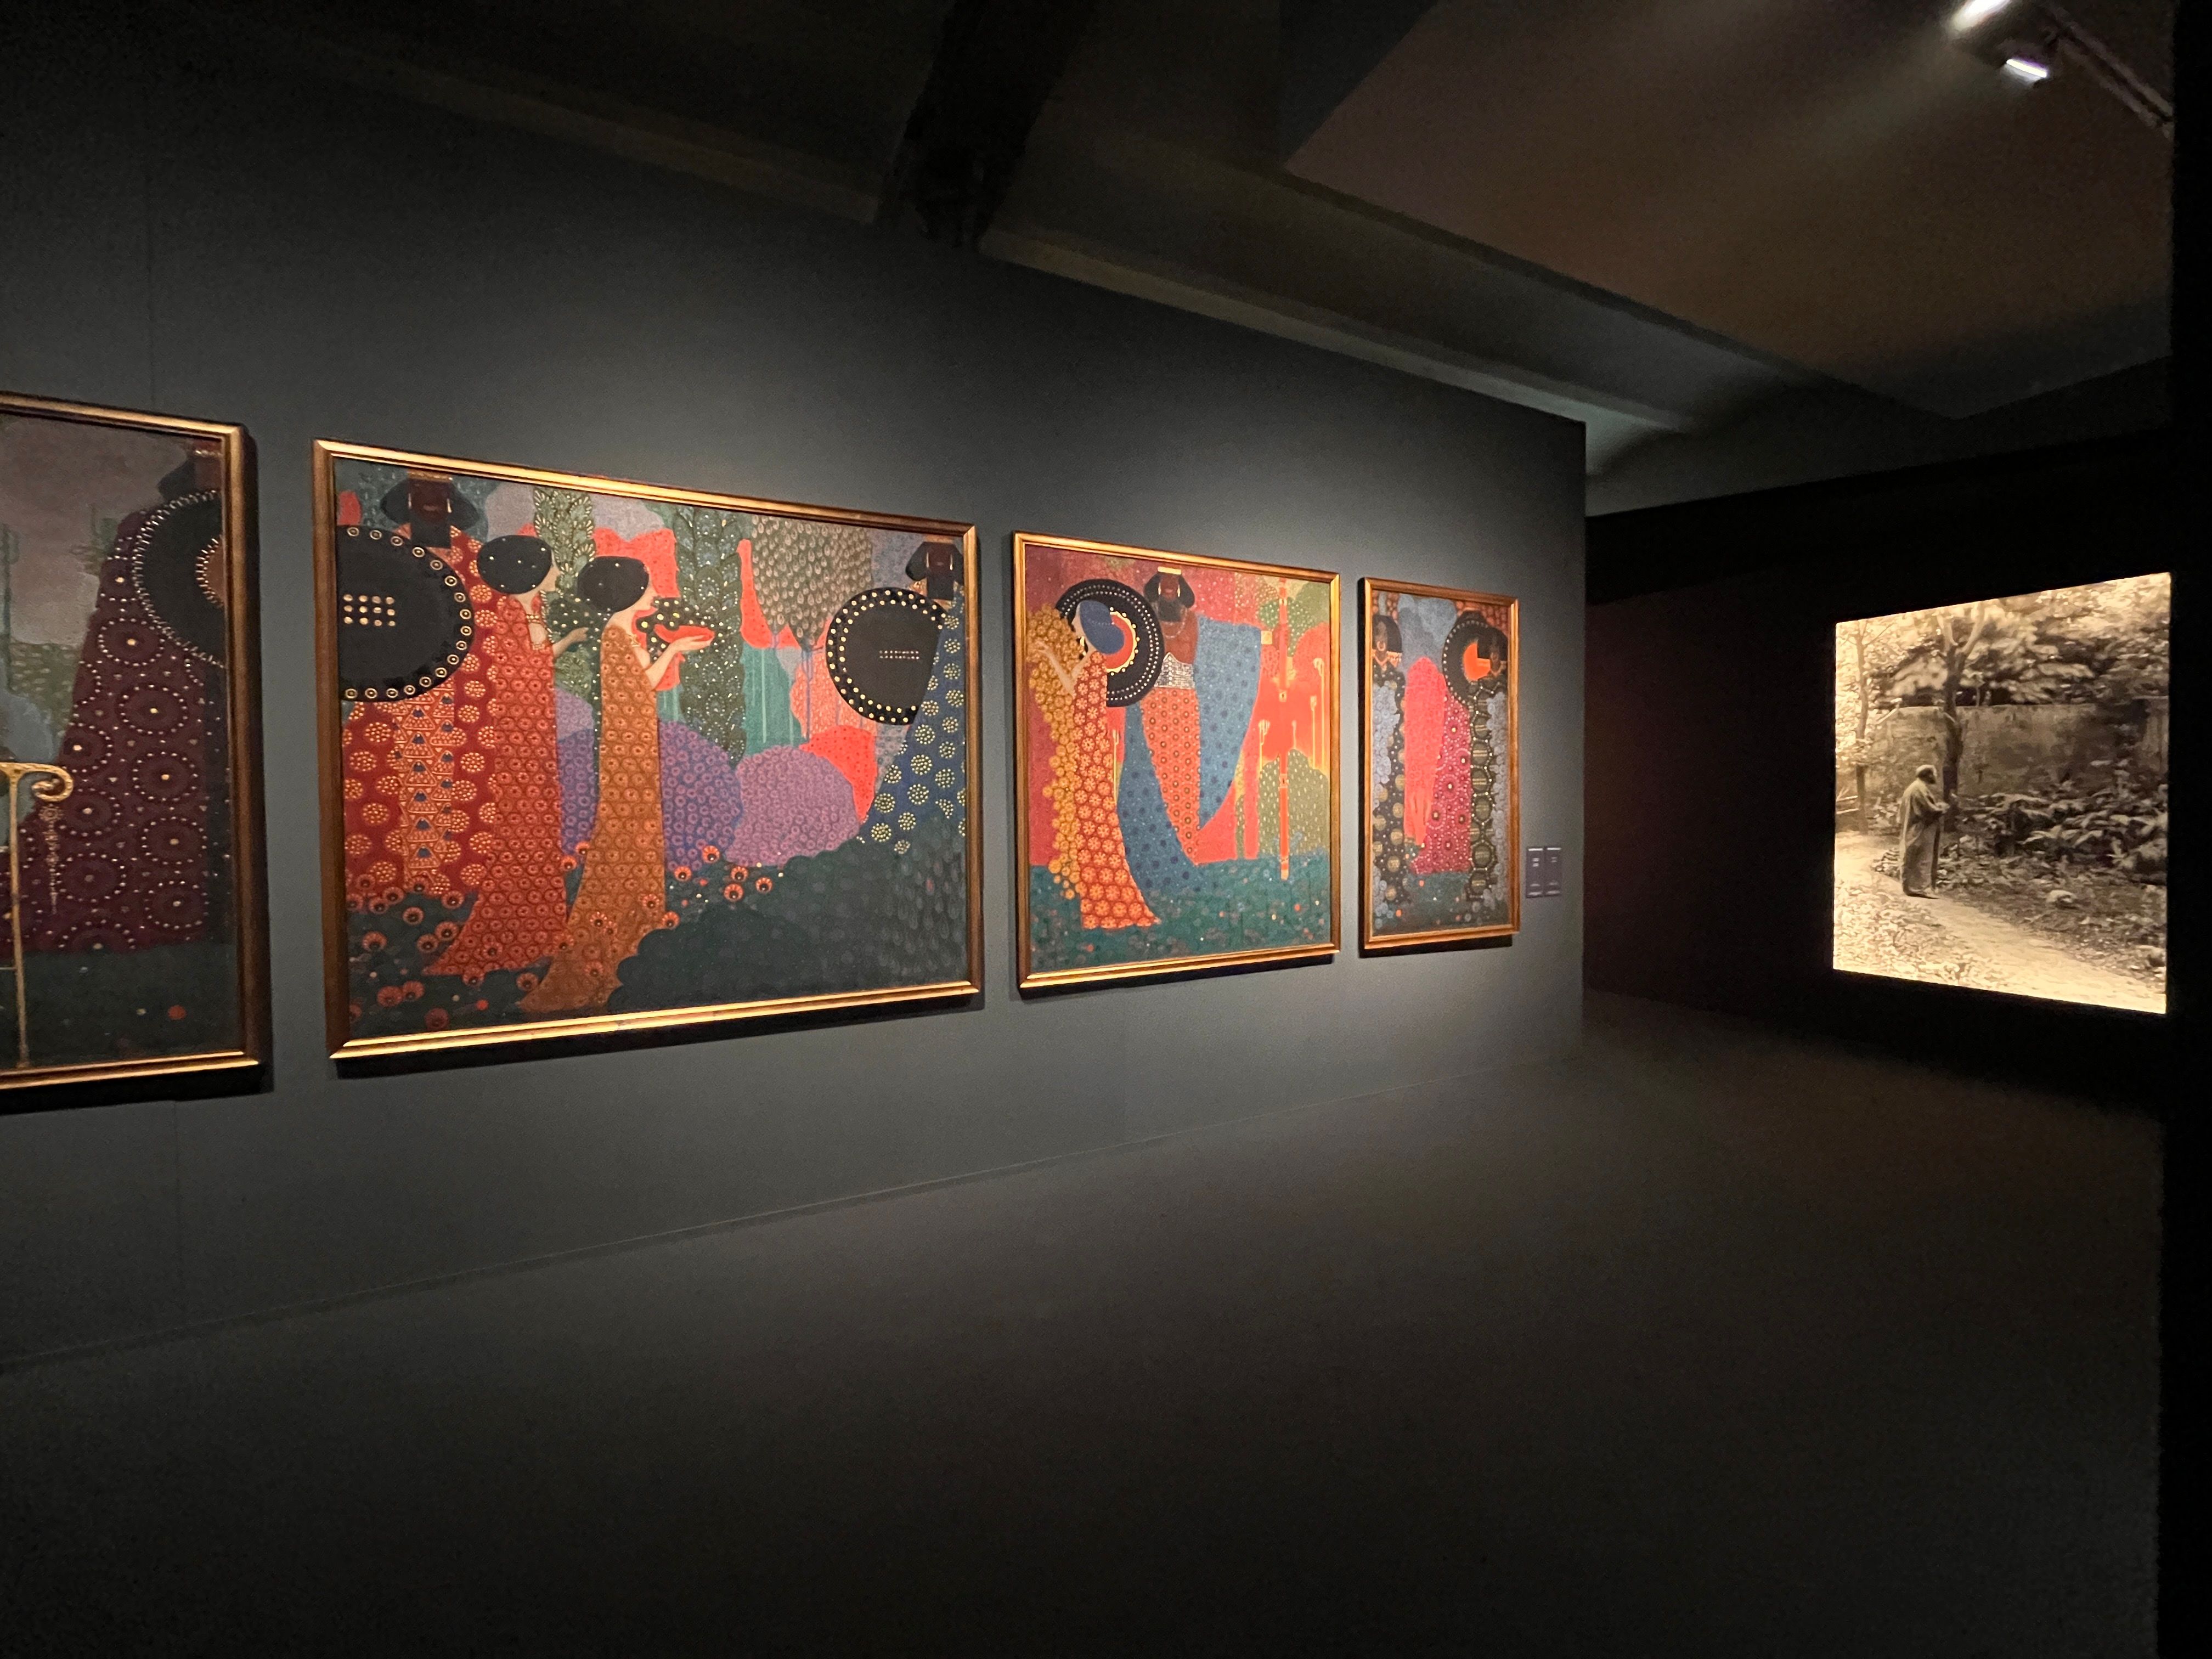 Grandissimo successo per la mostra “Klimt. L’uomo, l’artista, il suo mondo” presso gli spazi della Galleria d'Arte Moderna Ricci Oddi e dell’XNL - Piacenza Contemporanea che chiude a 64.478 visitatori